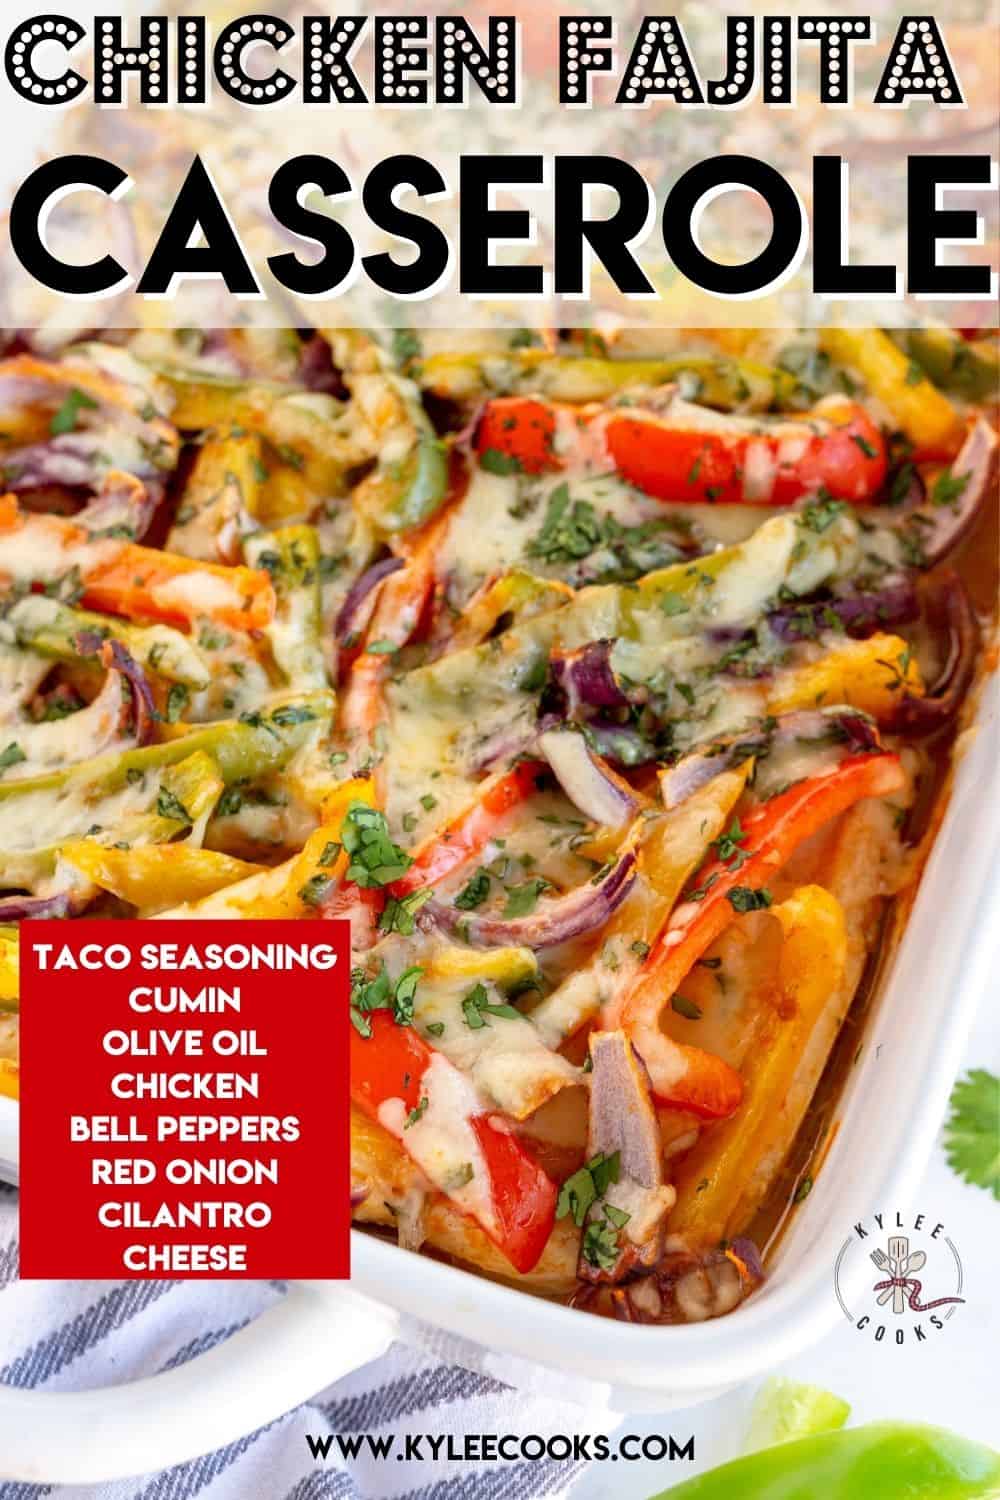 Chicken Fajita Casserole with recipe name overlaid in text